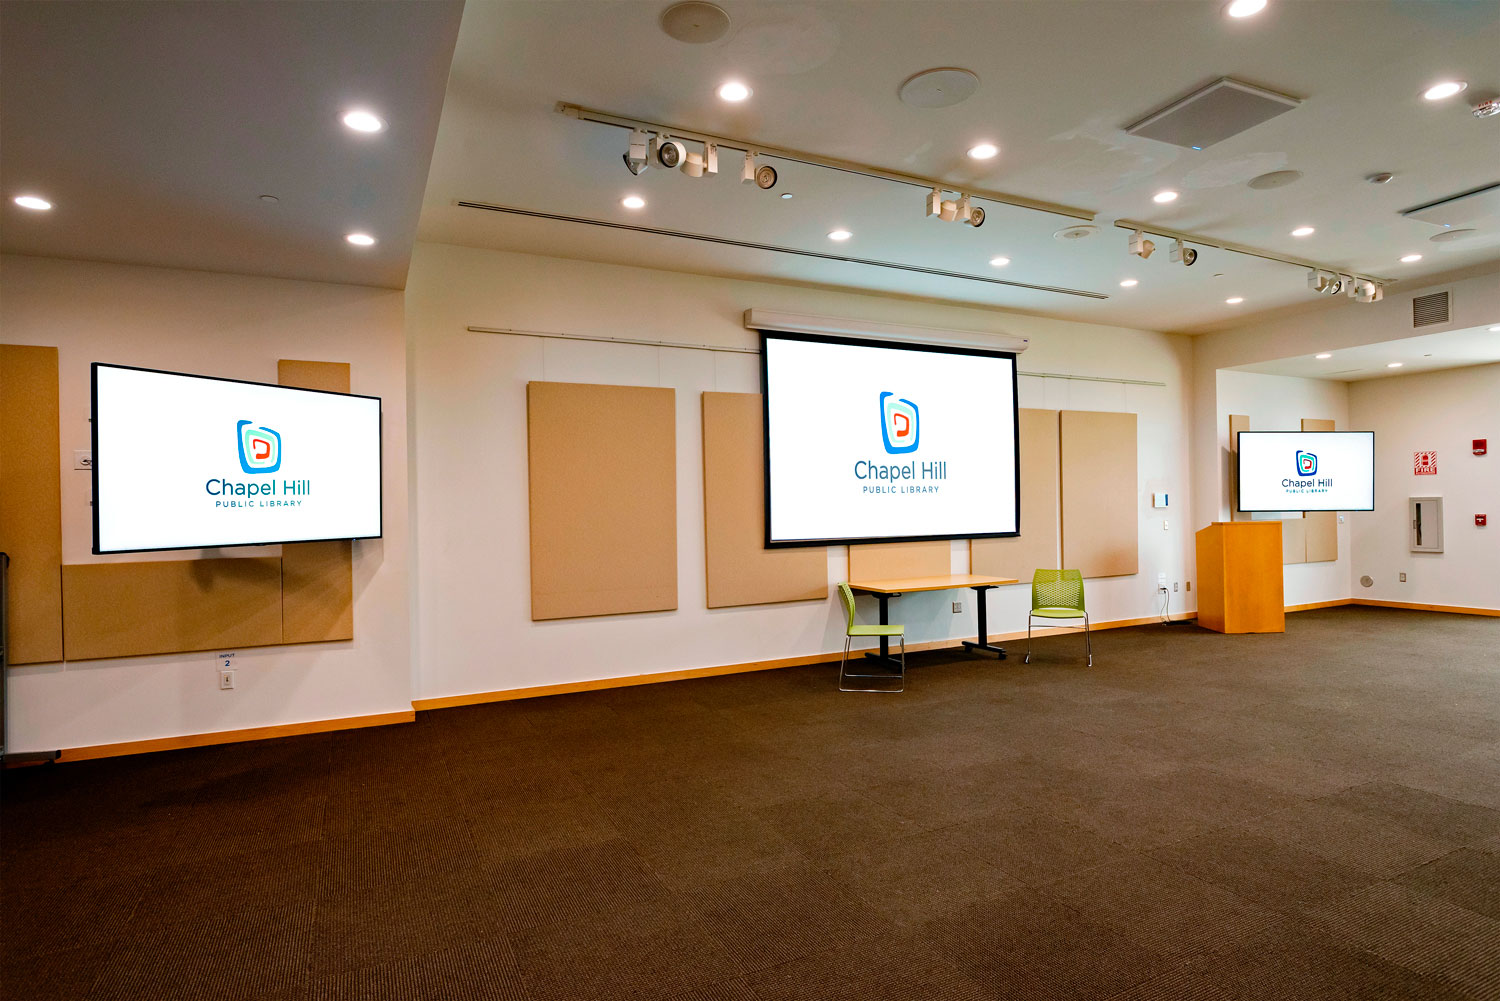 L'environnement ouvert des plus grandes salles de réunion permet d'adapter la disposition des tables et des sièges à un vaste éventail d'événements et d'activités.